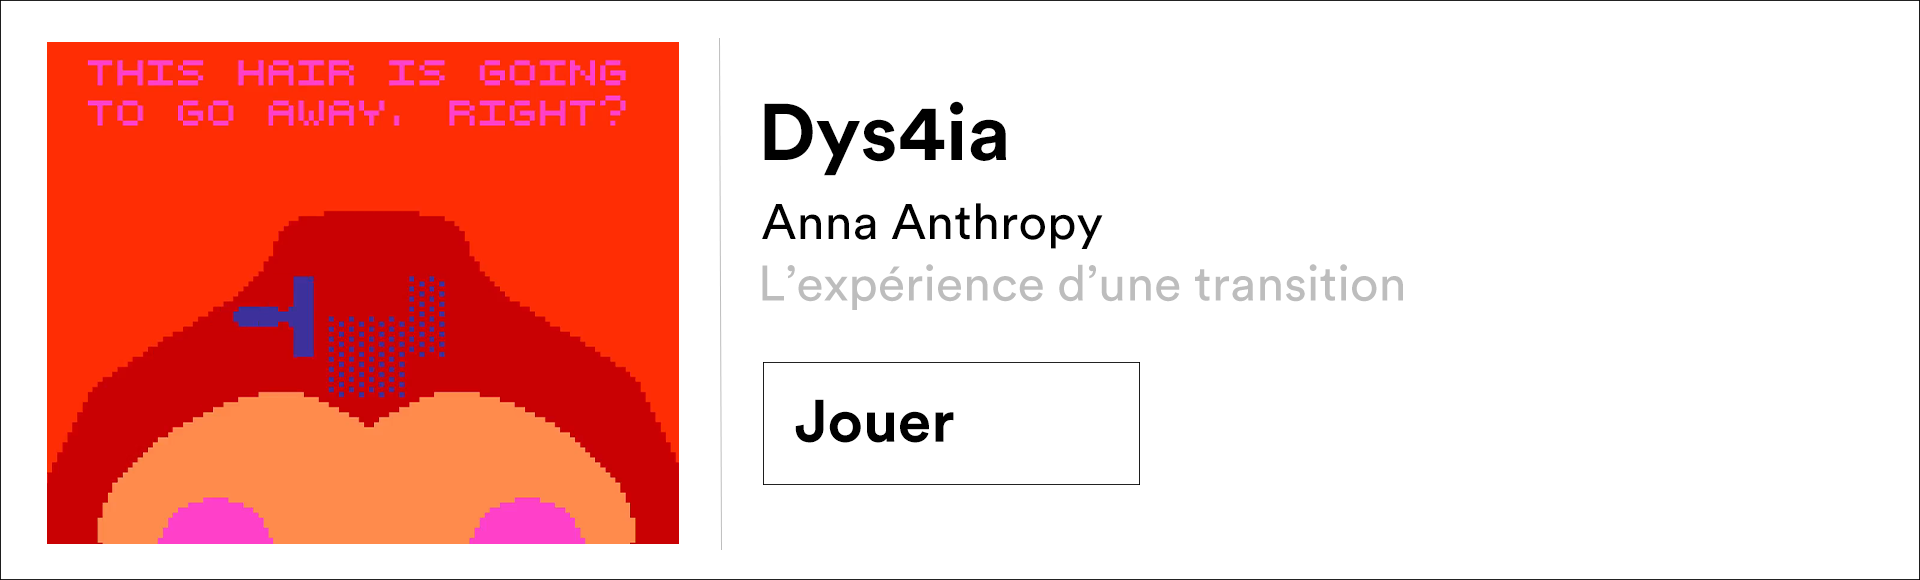 play dys4ia Anna Anthropy”></a></p>
			
			<ul class=